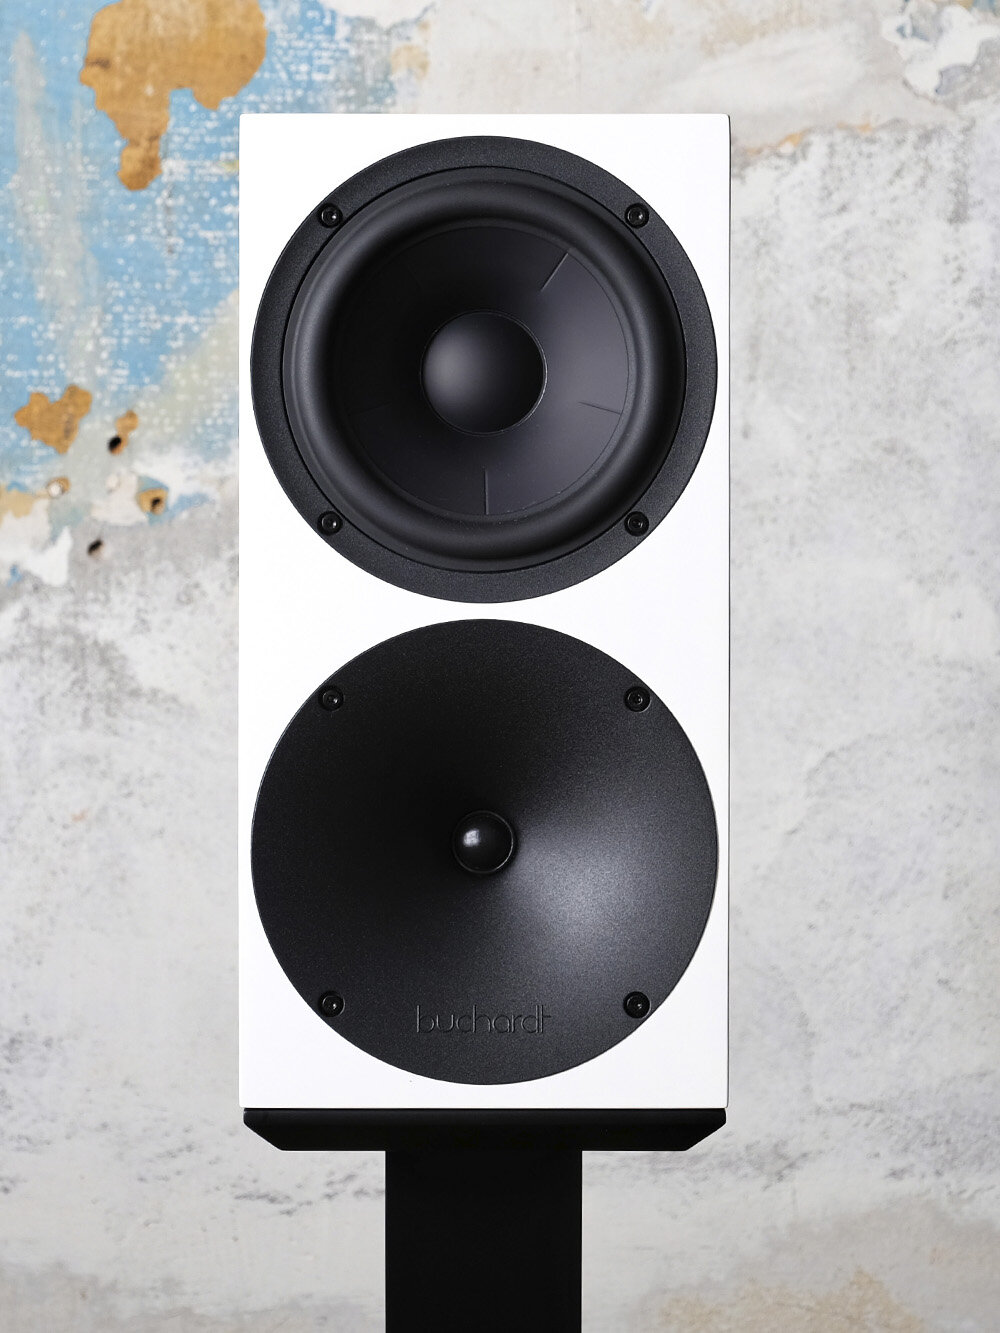 buchardt s400 speakers